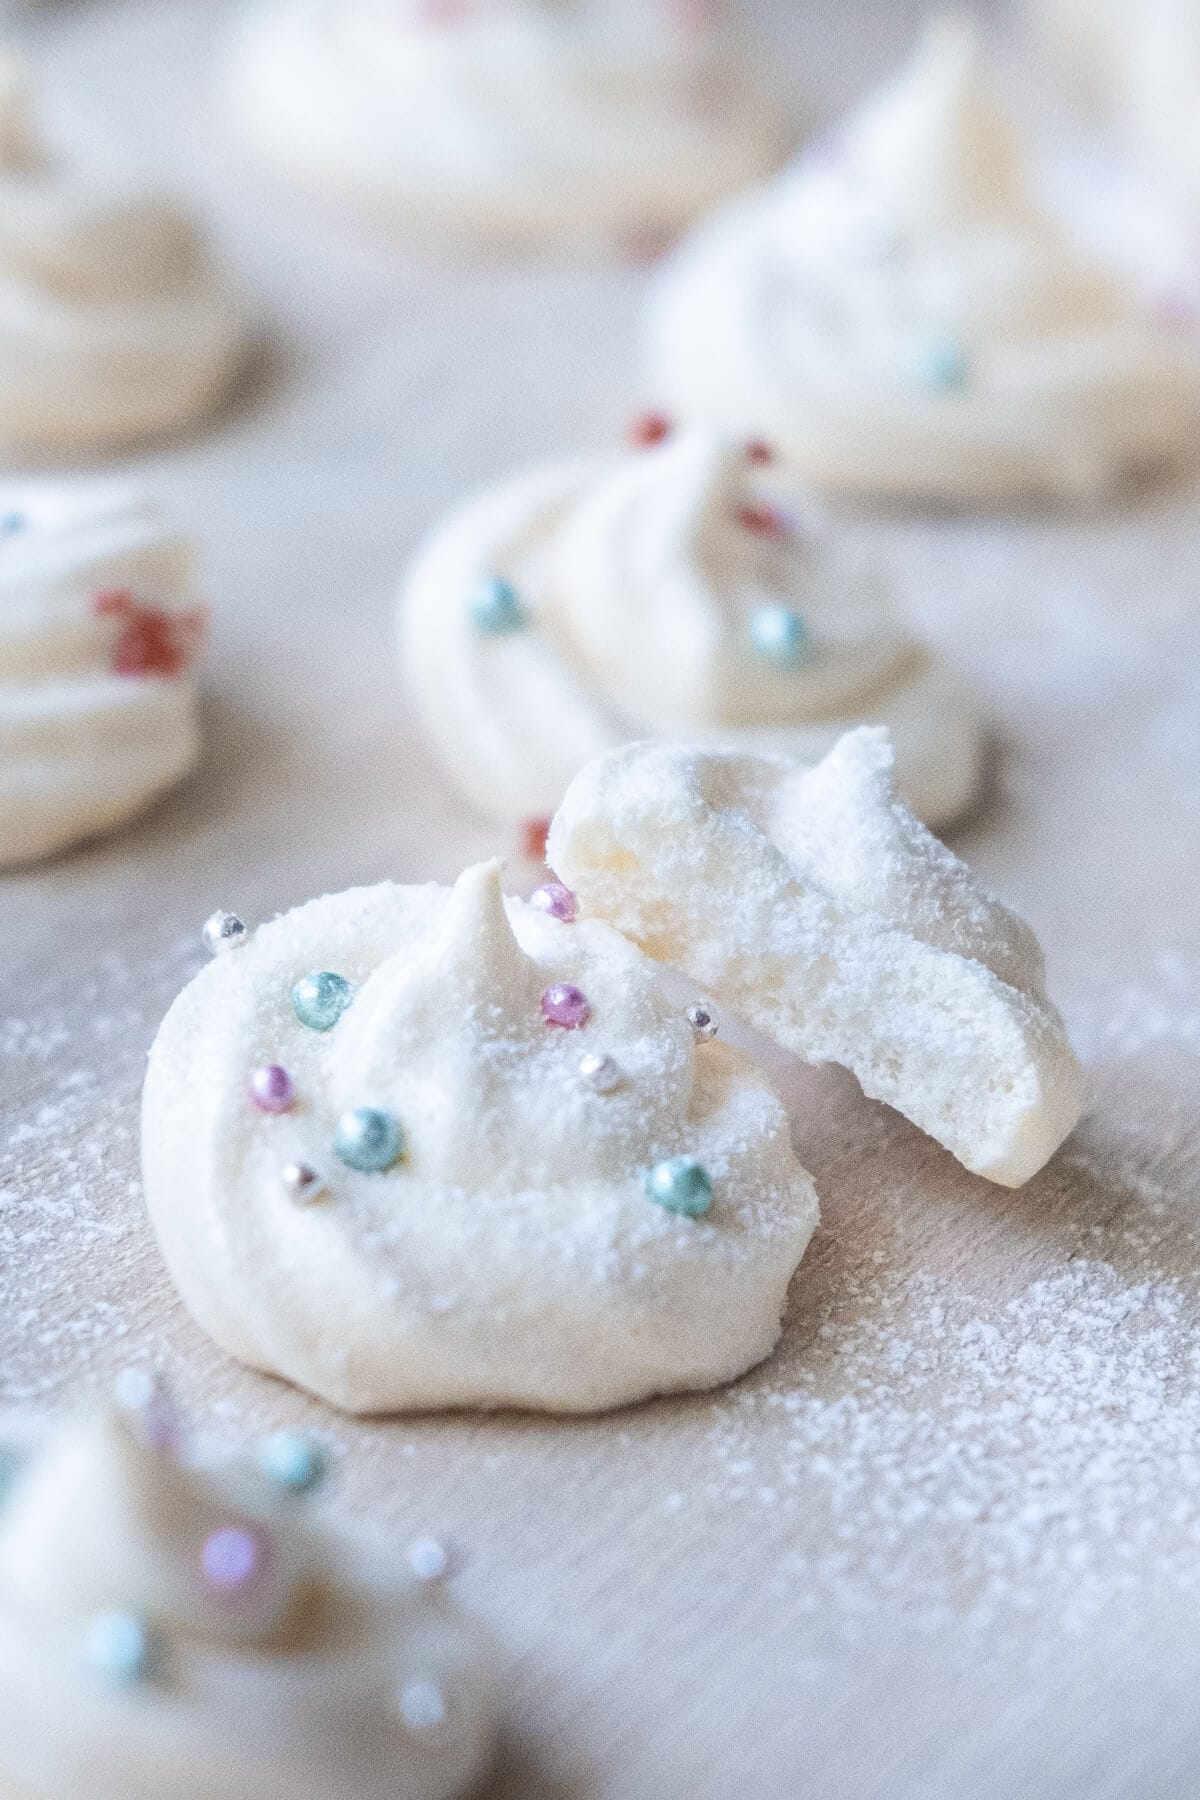 Crisp vanilla meringue cookies with confectioner's sugar dusting on top. 